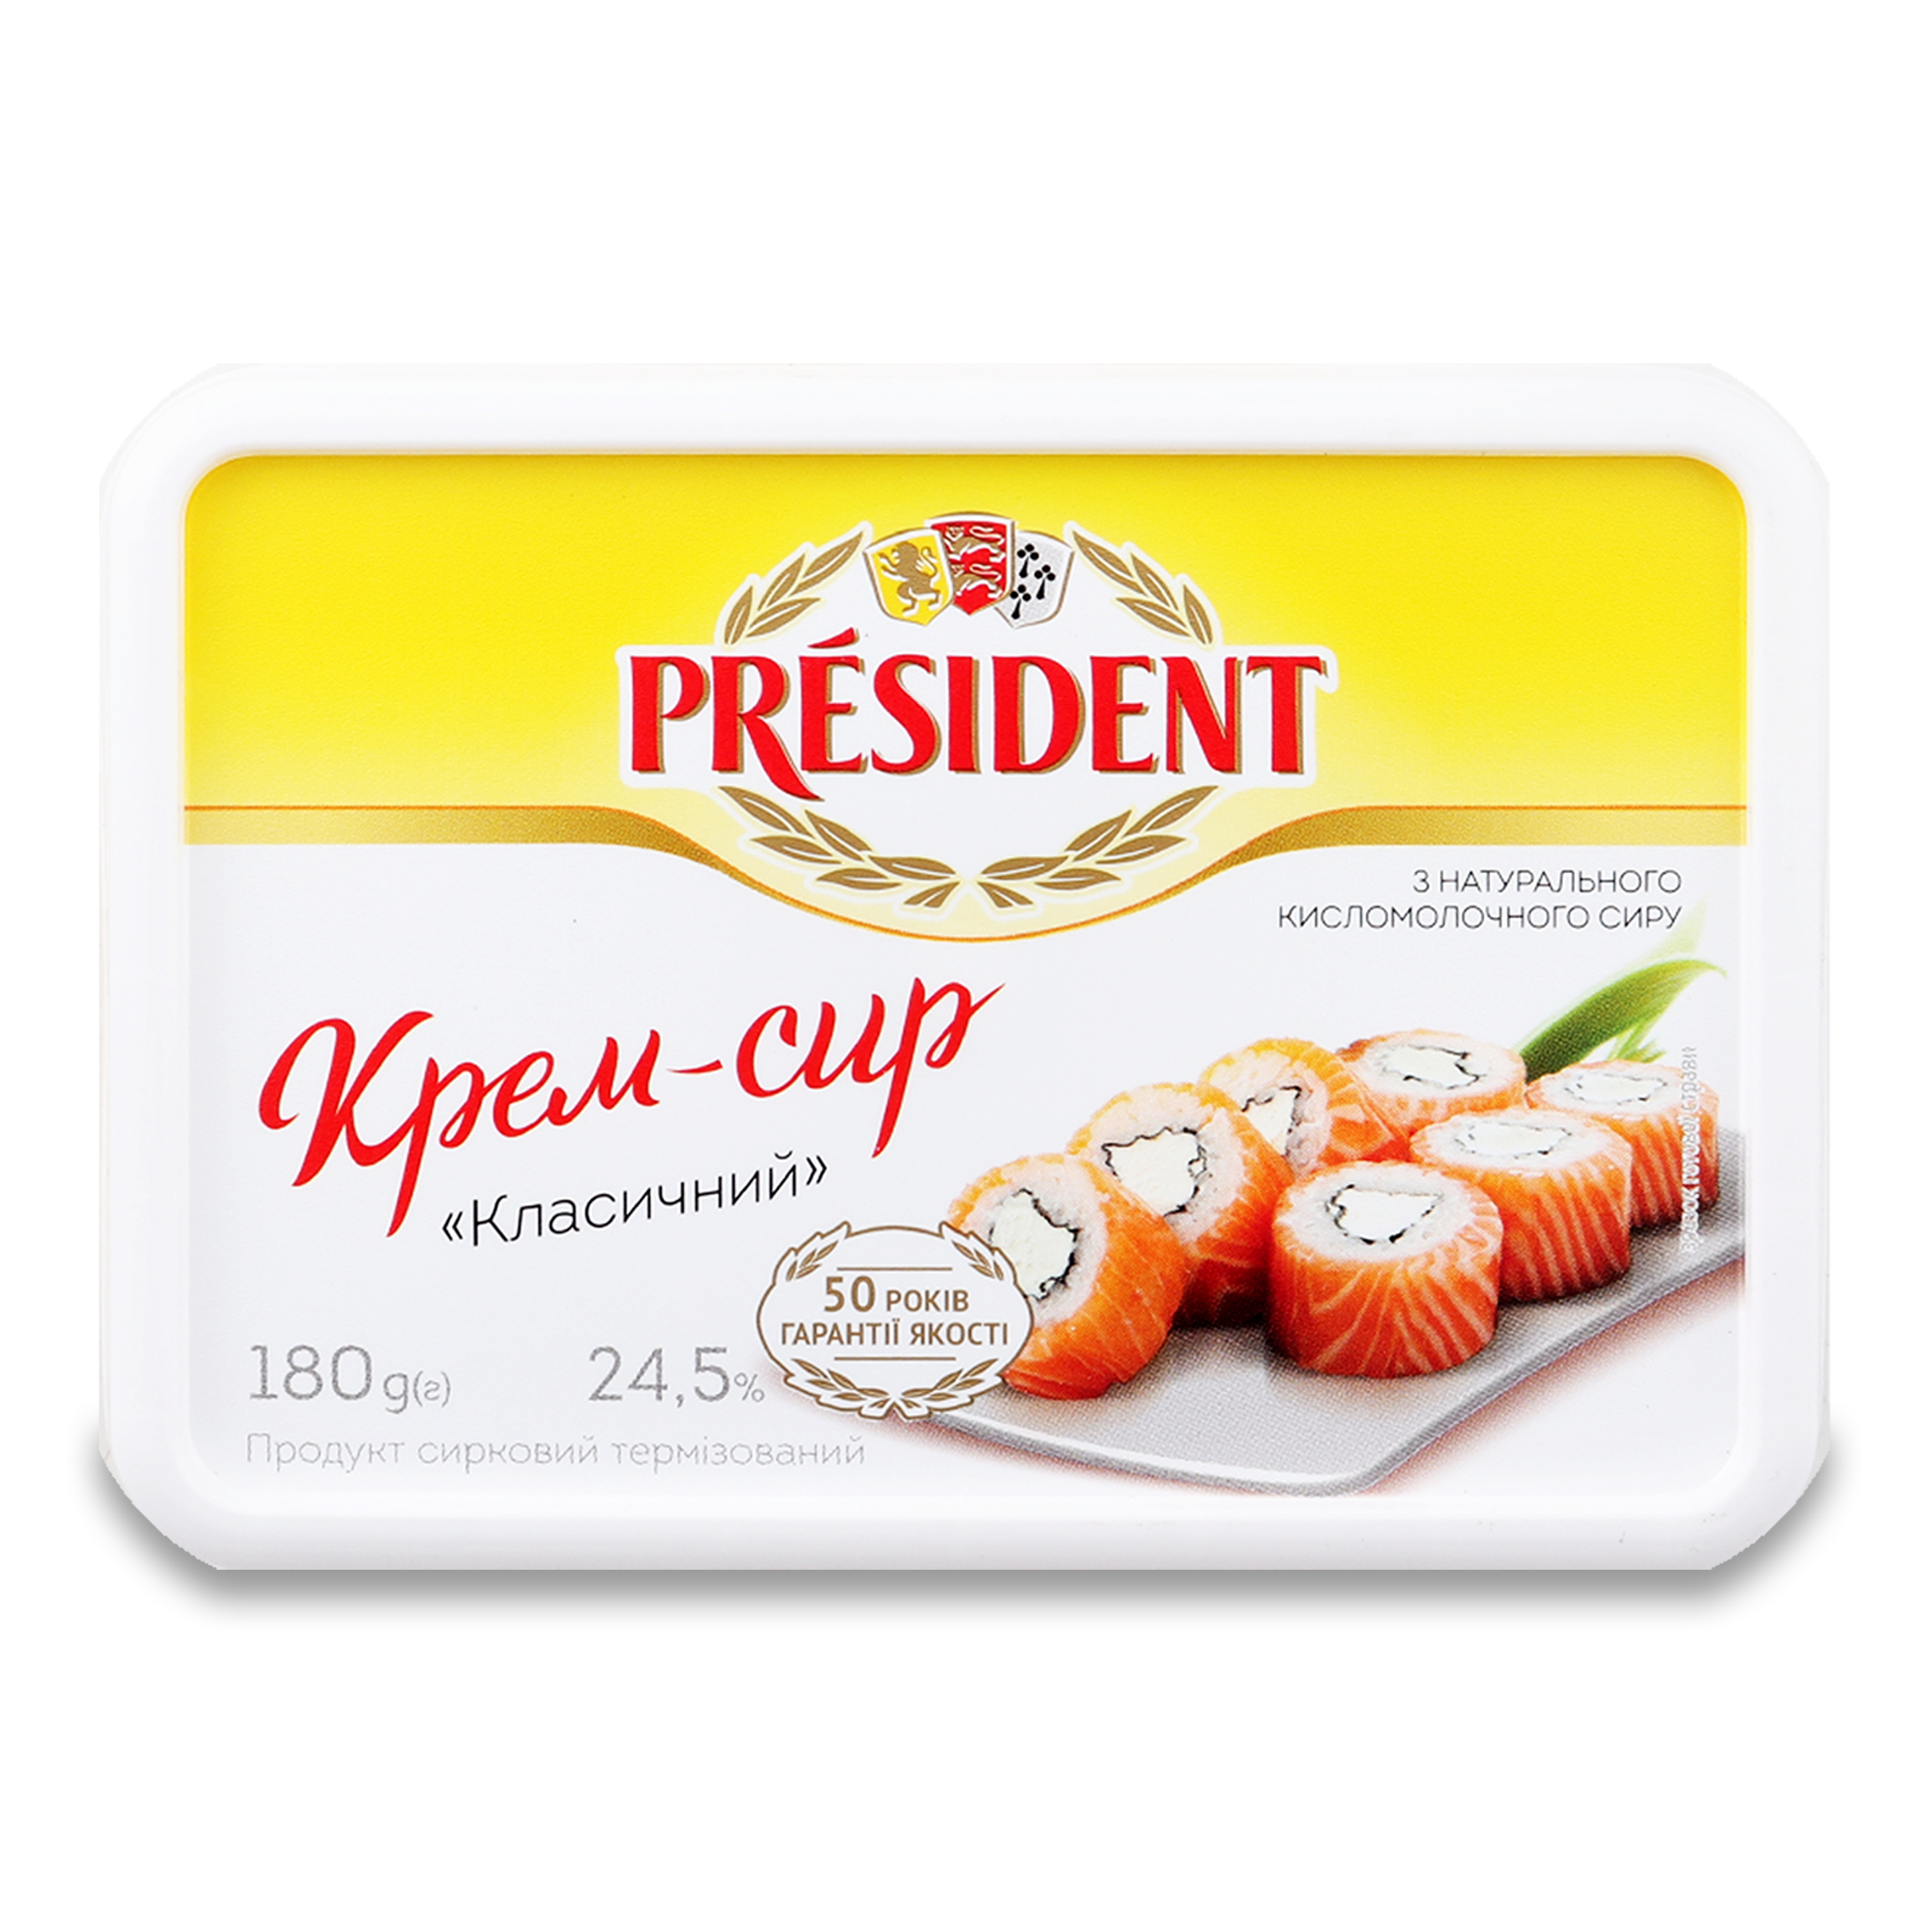 Крем-сир President Класичний продукт сирковий 24,5% 180г